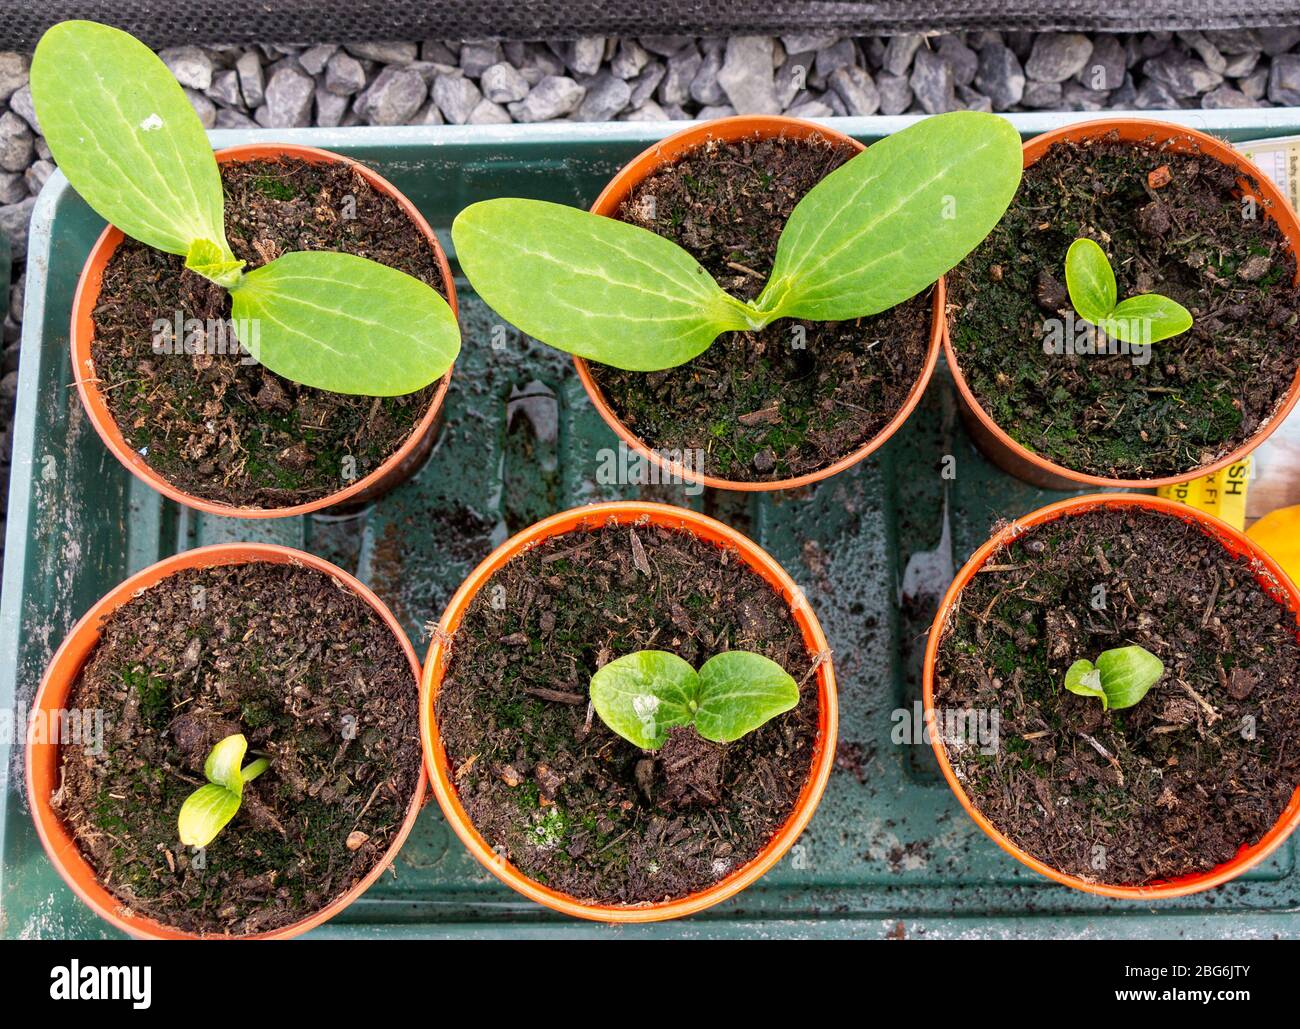 Plántulas de calabaza en potes de 4' pulgadas listos para ser plantados. Foto de stock